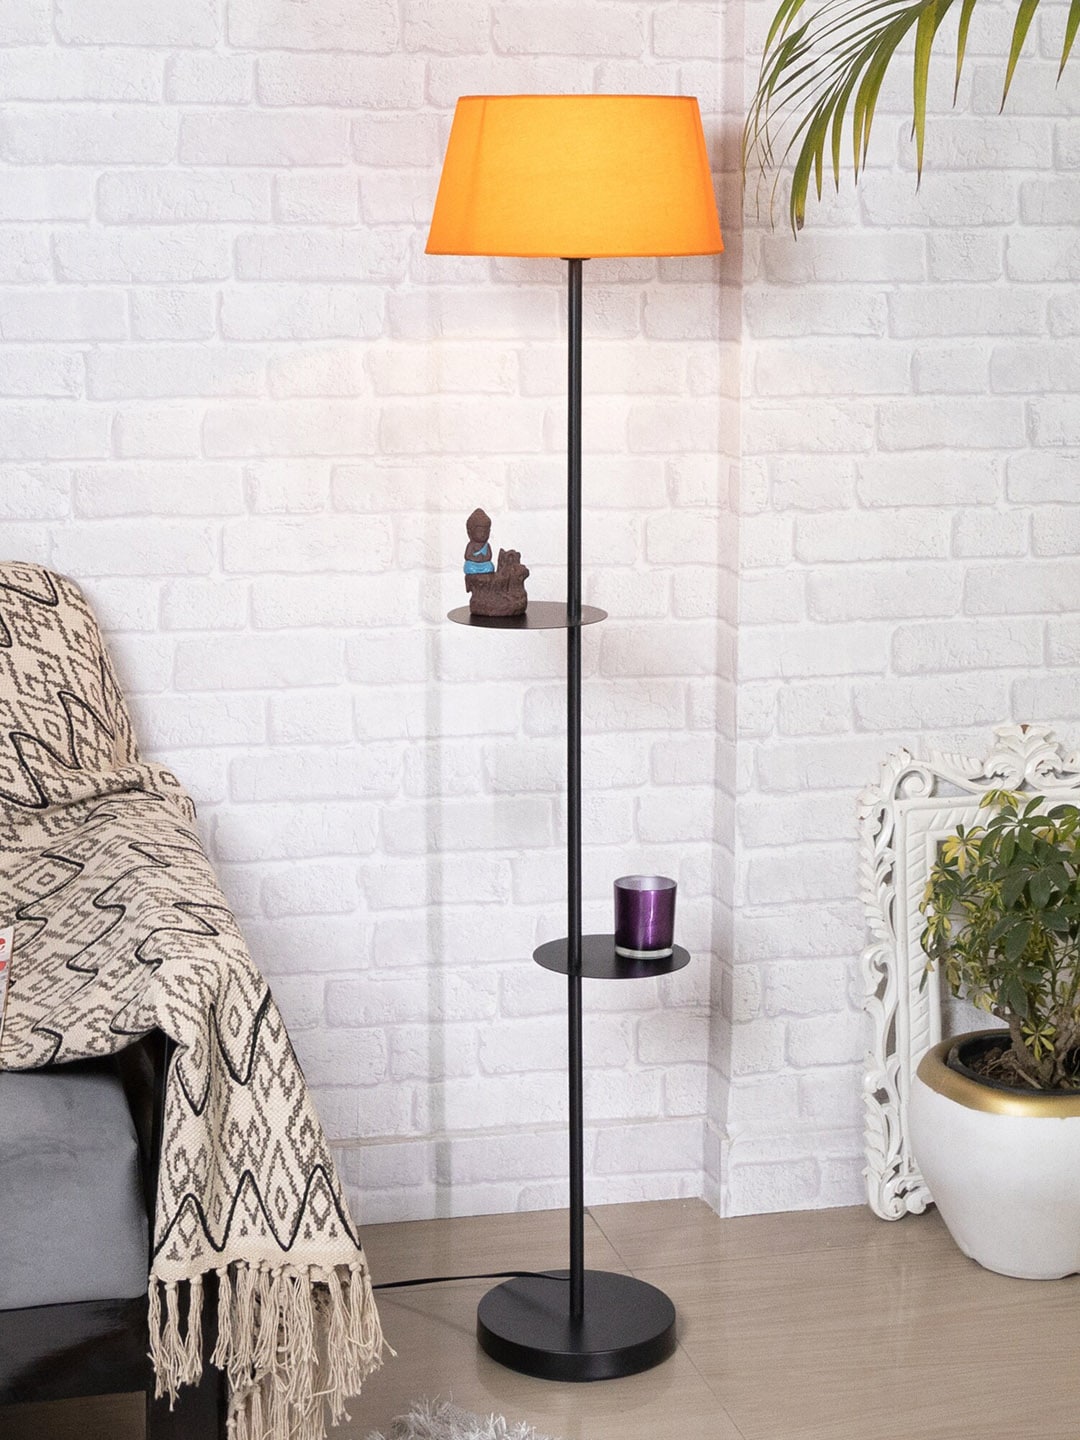 Homesake Orange Duo Shelf Metal Floor Lamp Price in India